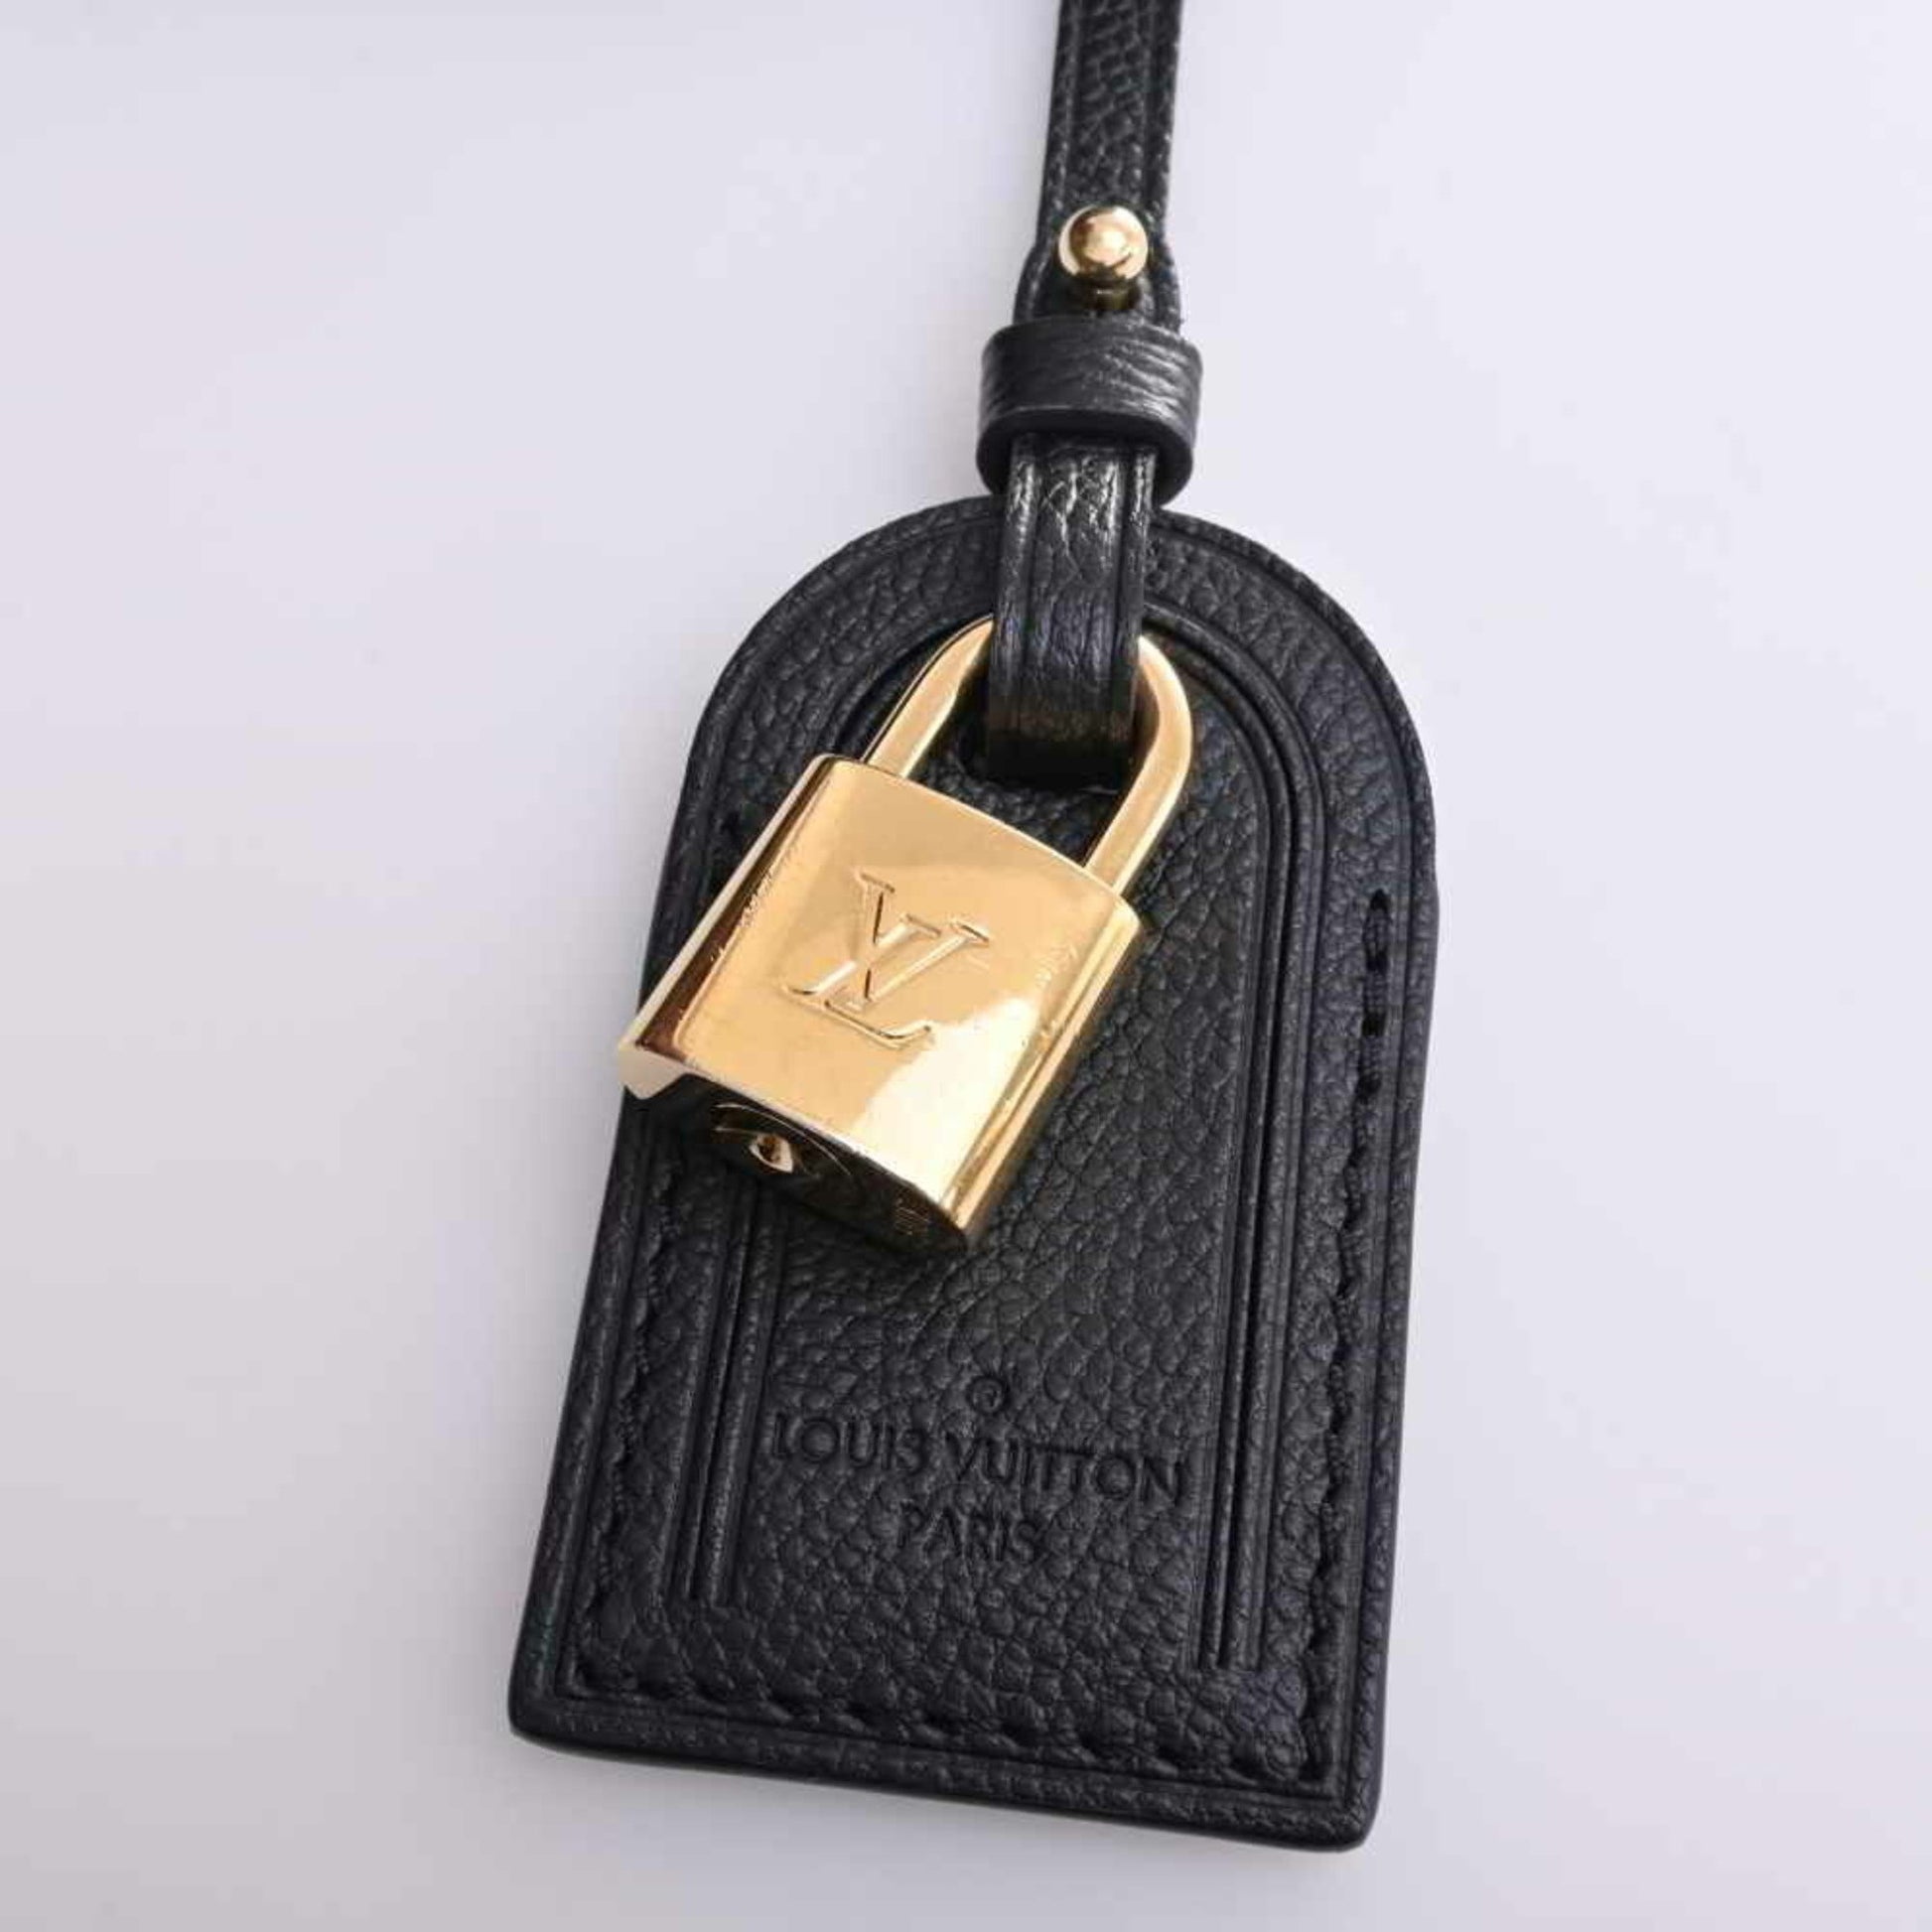 LOUIS VUITTON Amplant Petit Palais PM Handbag M58913 Black Ladies